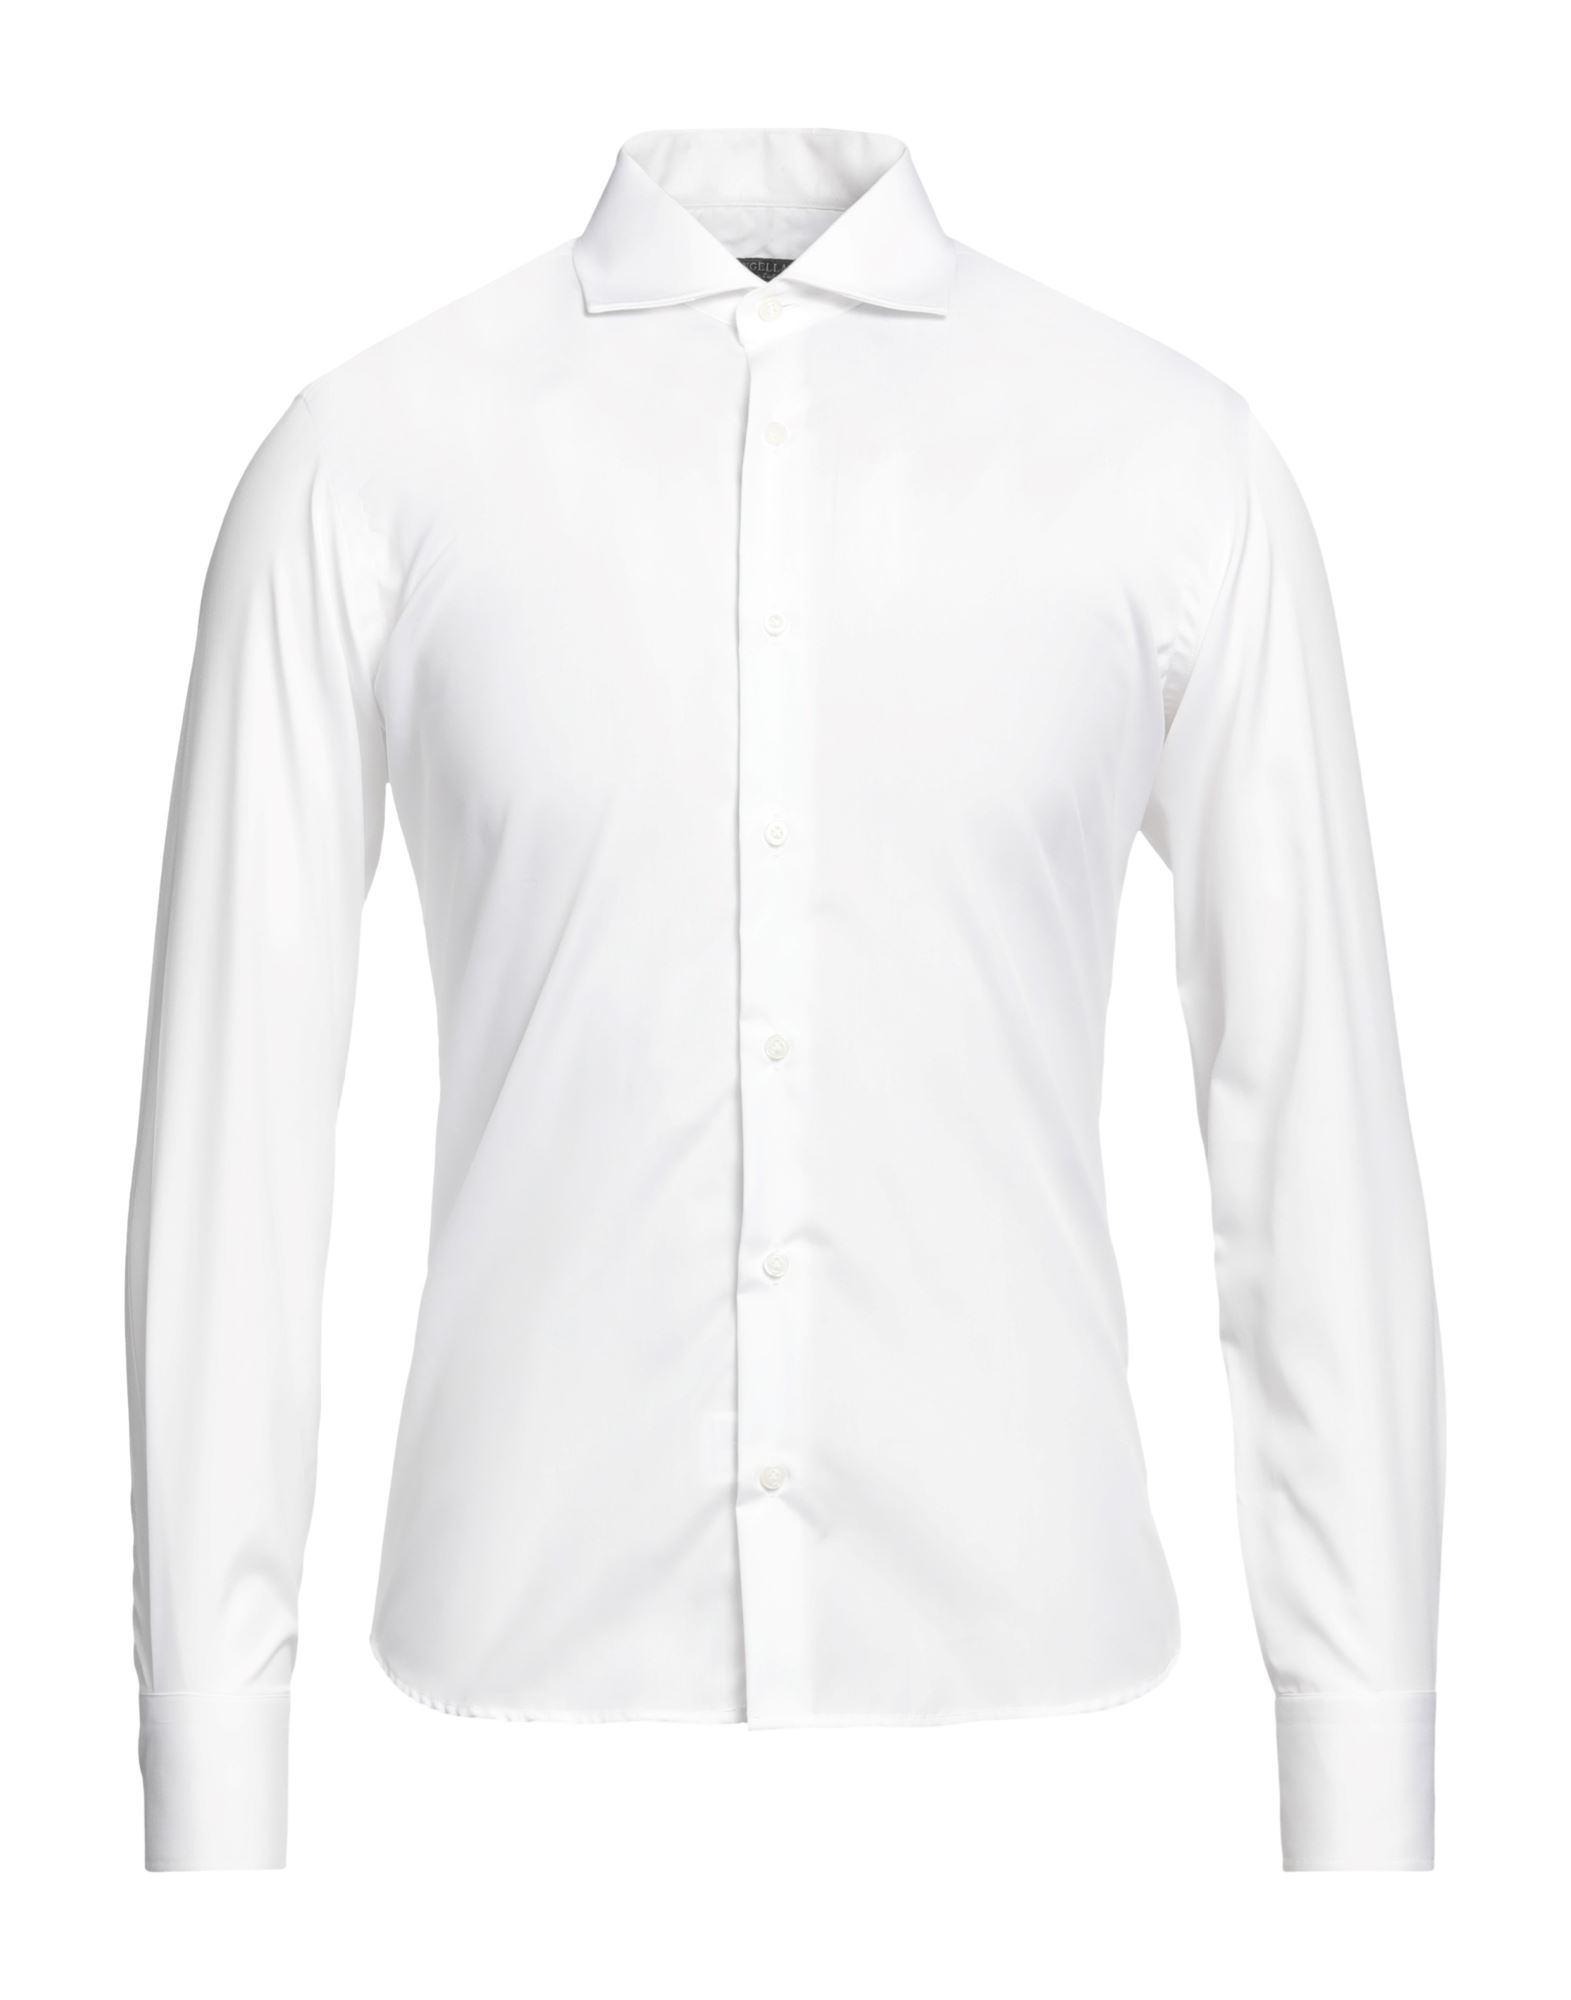 P. Langella Shirts In White